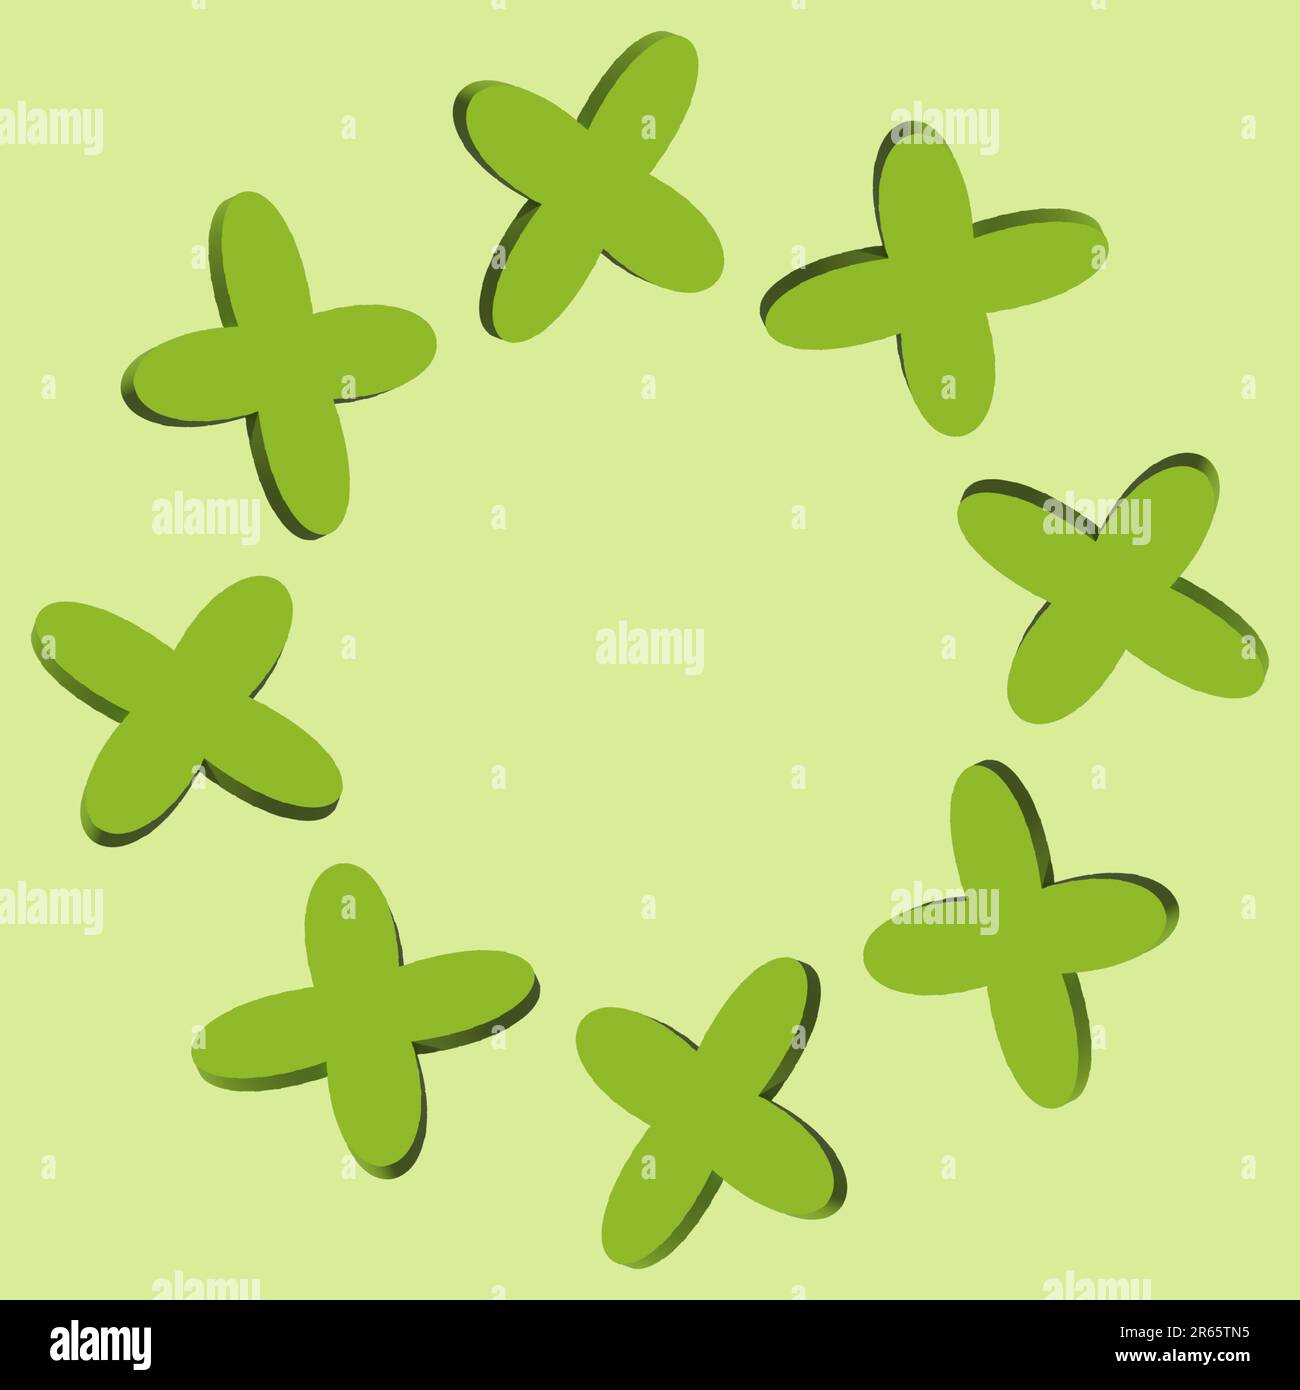 Eine Darstellung einer Sammlung grüner Shamrocks, die in kreisförmigem Format angeordnet sind Stockfoto